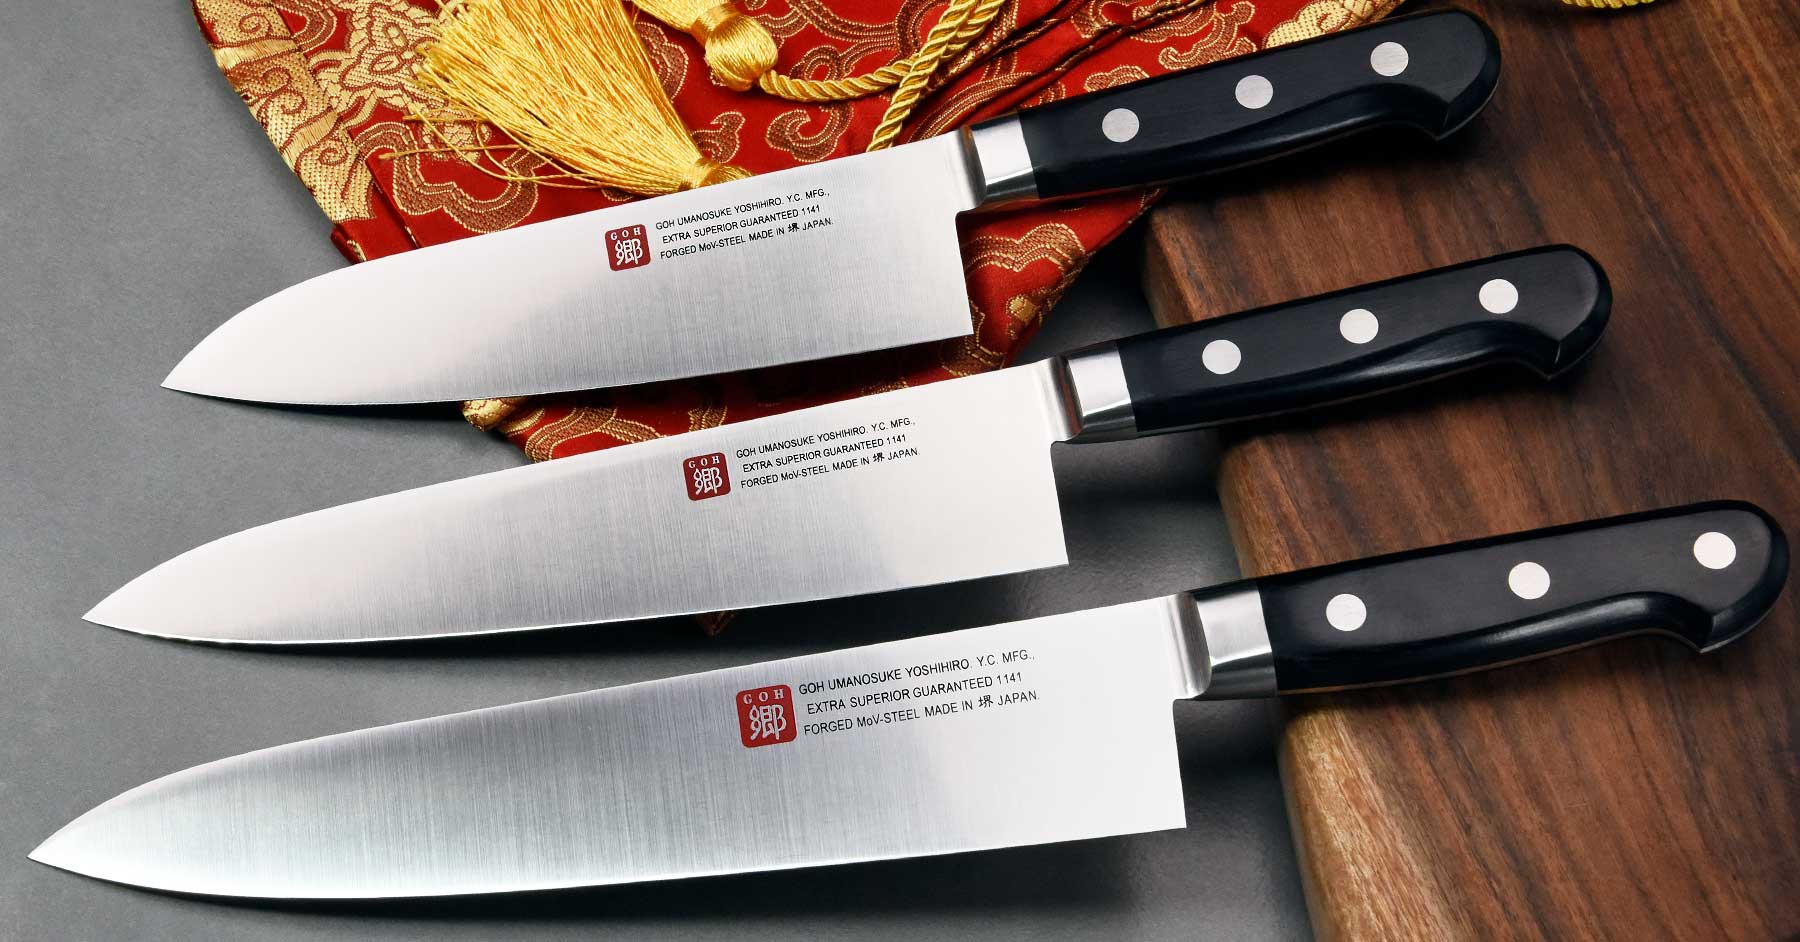 סכין מטבח איכותית – הדרך לשפר ביצועים גם במטבח